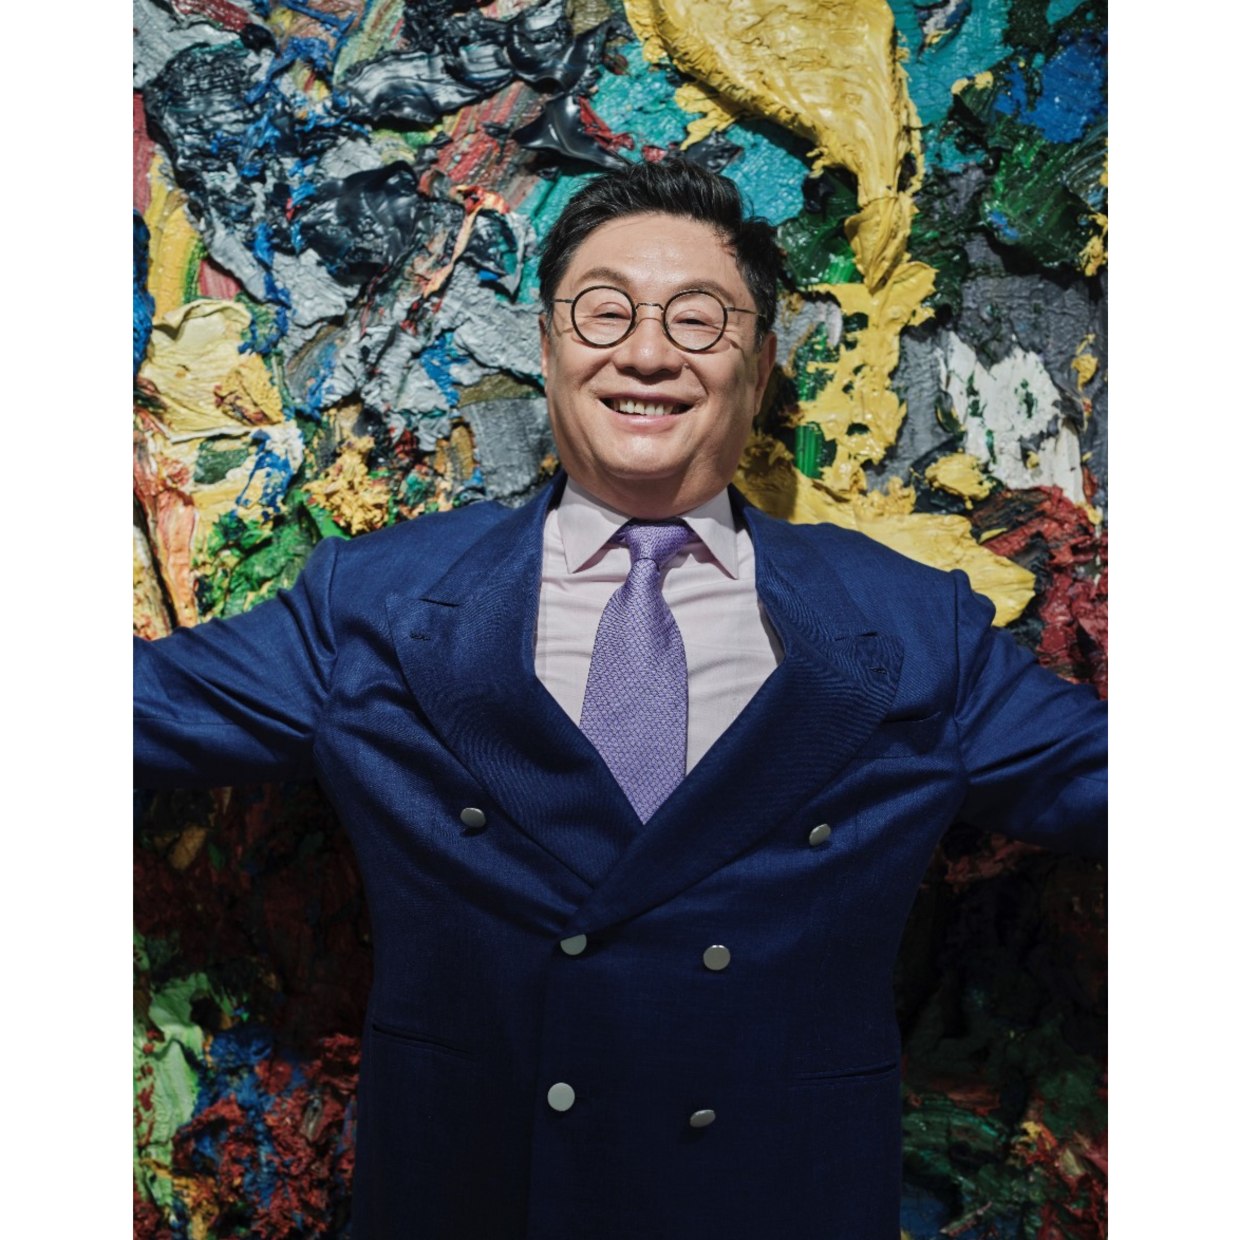 艺术家：刘钢 律师、收藏家、写作者。 刘钢是亚洲资本市场的顶尖律师之一。1999年，他设计出著名的VIE结构，帮助众多私营企业在海外融资上市。为此，刘钢于2010年获得国际法律界评级机构钱伯斯颁发的中国法律终身成就奖。 刘钢已有30多年艺术品收藏经历，他是中国大陆最早收藏当代艺术的藏家之一。刘钢以其独特的品味，建立起一套中国油画系列收藏。这些油画的时间跨度，从18世纪开始，一直延展到当代。 刘钢也是一位作家。2017年，他出版了一本艺术评论集《时光收藏者》，该书获得《中国艺术权力榜》颁发的年度最佳艺术出版物。 刘钢还是一位古籍、古地图收藏家，他对地图史学有较深入的研究，曾在《地图论坛》（MapForum）和《测量学研究》（E-Perimetron）等世界地图史学刊物发表学术文章，并数次作为嘉宾在国内和国际研讨会上发表讲演。2006年，刘钢将收藏的1763年《天下全舆总图》（1418年《天下诸番识贡图》摹本）公布于众，引起很大反响。《经济学人》《时代周刊》《纽约时报》、CNN、BBC、路透社、法新社等数十家国际知名媒体相继报道，引起全球轰动。2009年，他出版了《古地图密码》一书，引起中国地图史学界的关注。